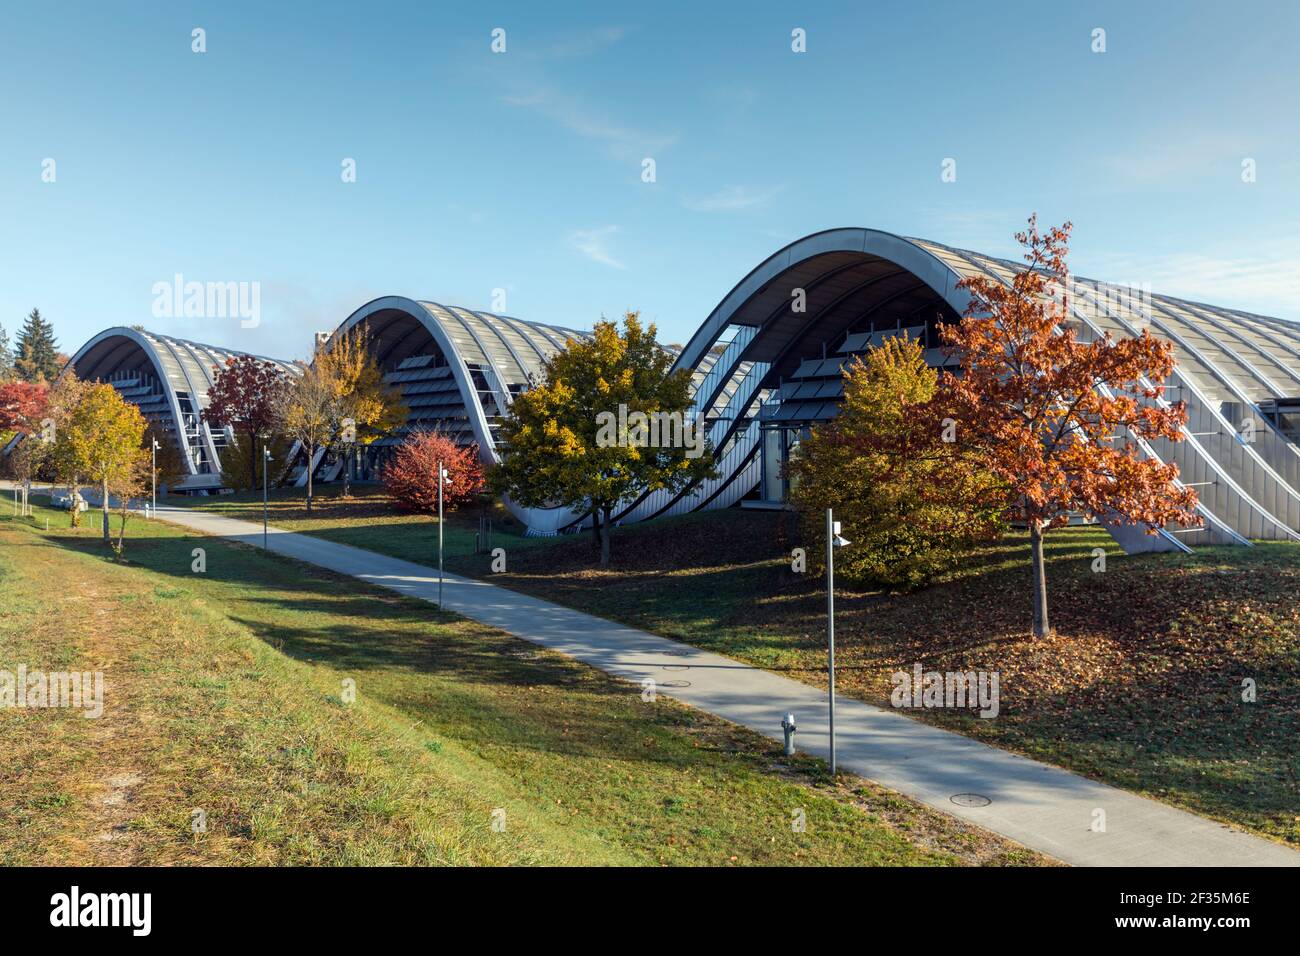 Schweiz, Bern, das Zentrum Paul Klee, entworfen von Renzo Piano, einem Museum, das dem Künstler Paul Klee gewidmet ist. Stockfoto